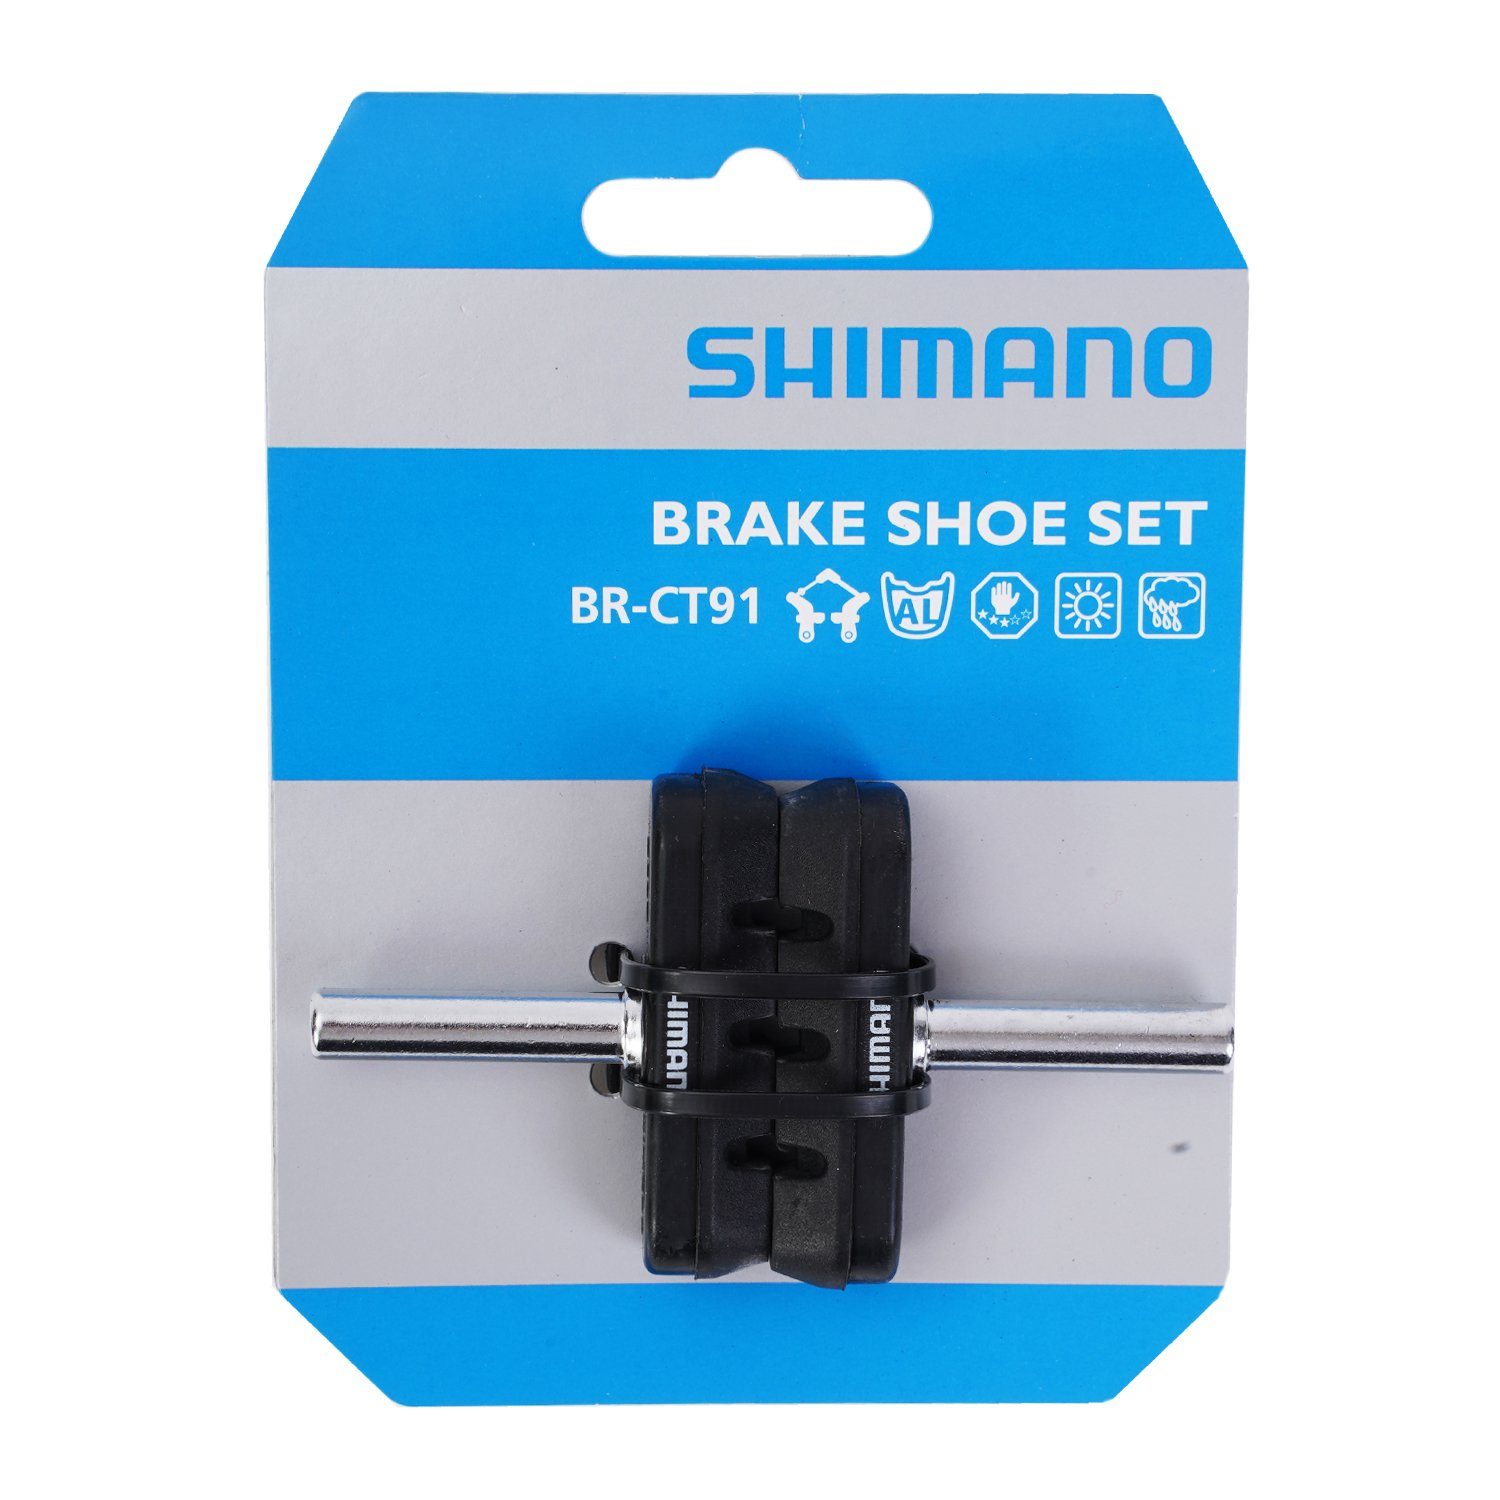 Shimano Cantilever-Bremse Bremsbeläge BR-CT91 Cantilever 2x Bremsbelag, Bremse Mittelzug Bremsklotz-Satz